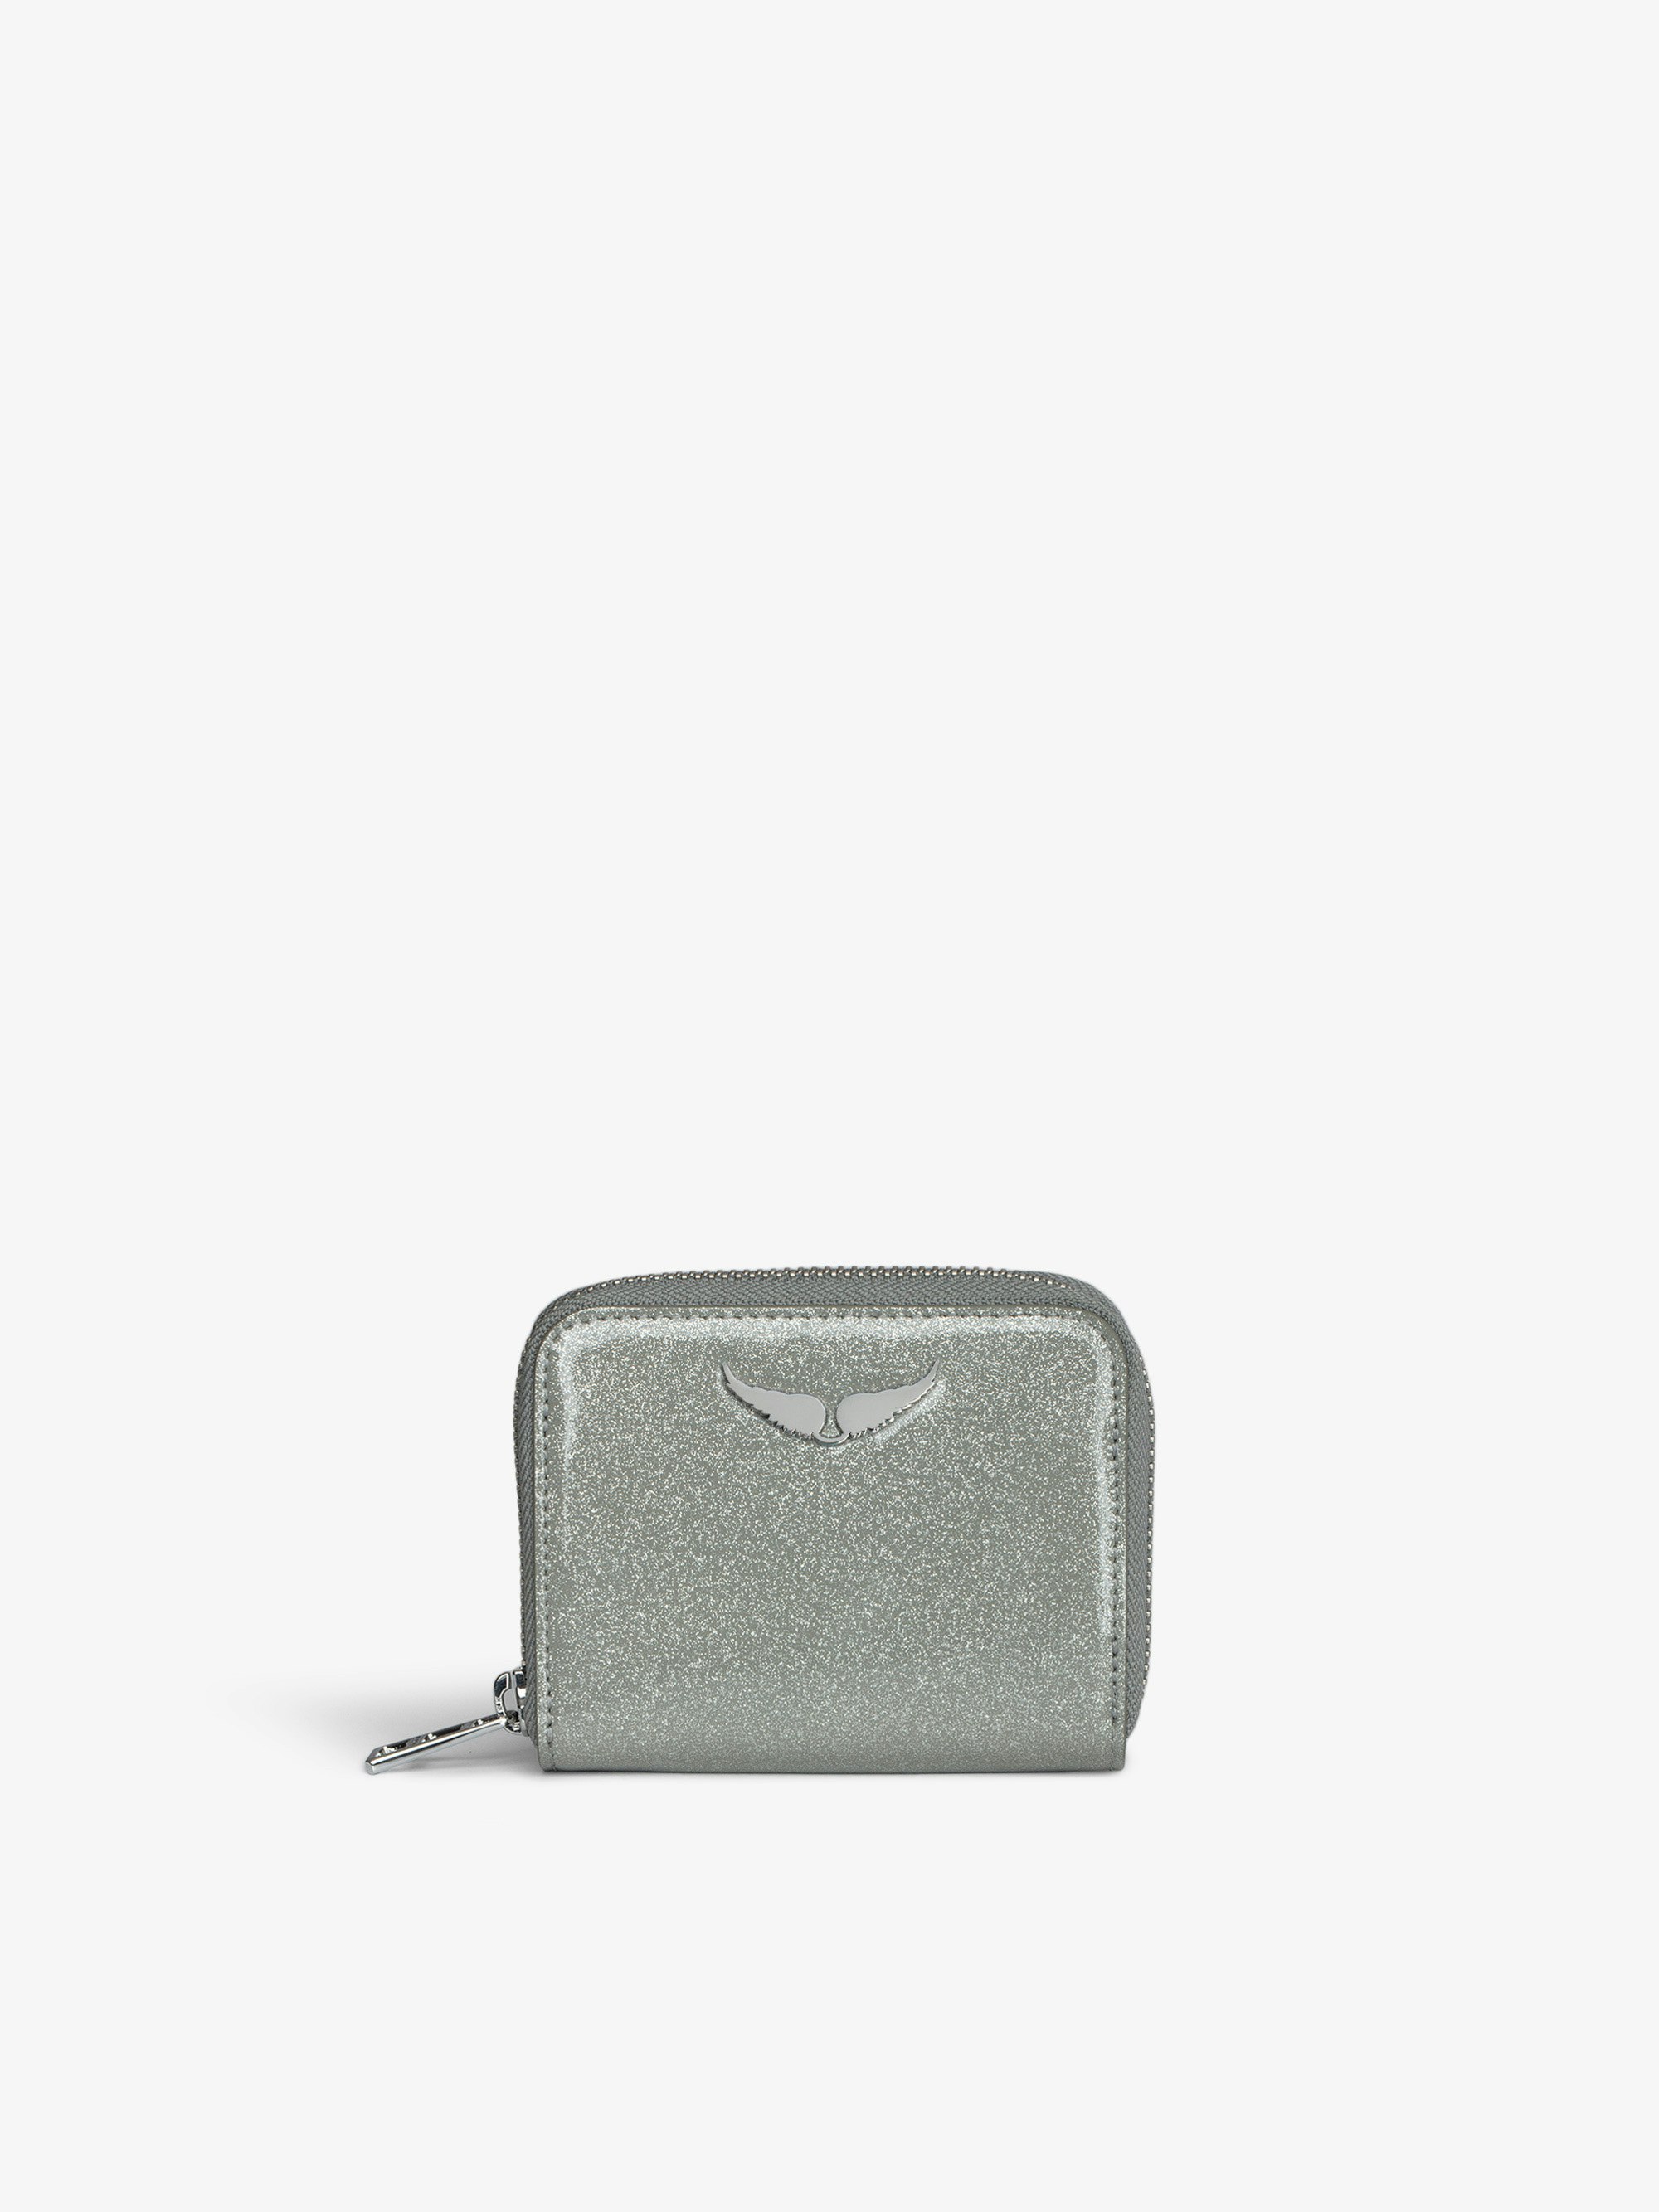 Portamonete Mini ZV Infinity Patent - Portafoglio in pelle verniciata argentata e glitter con charm ali.